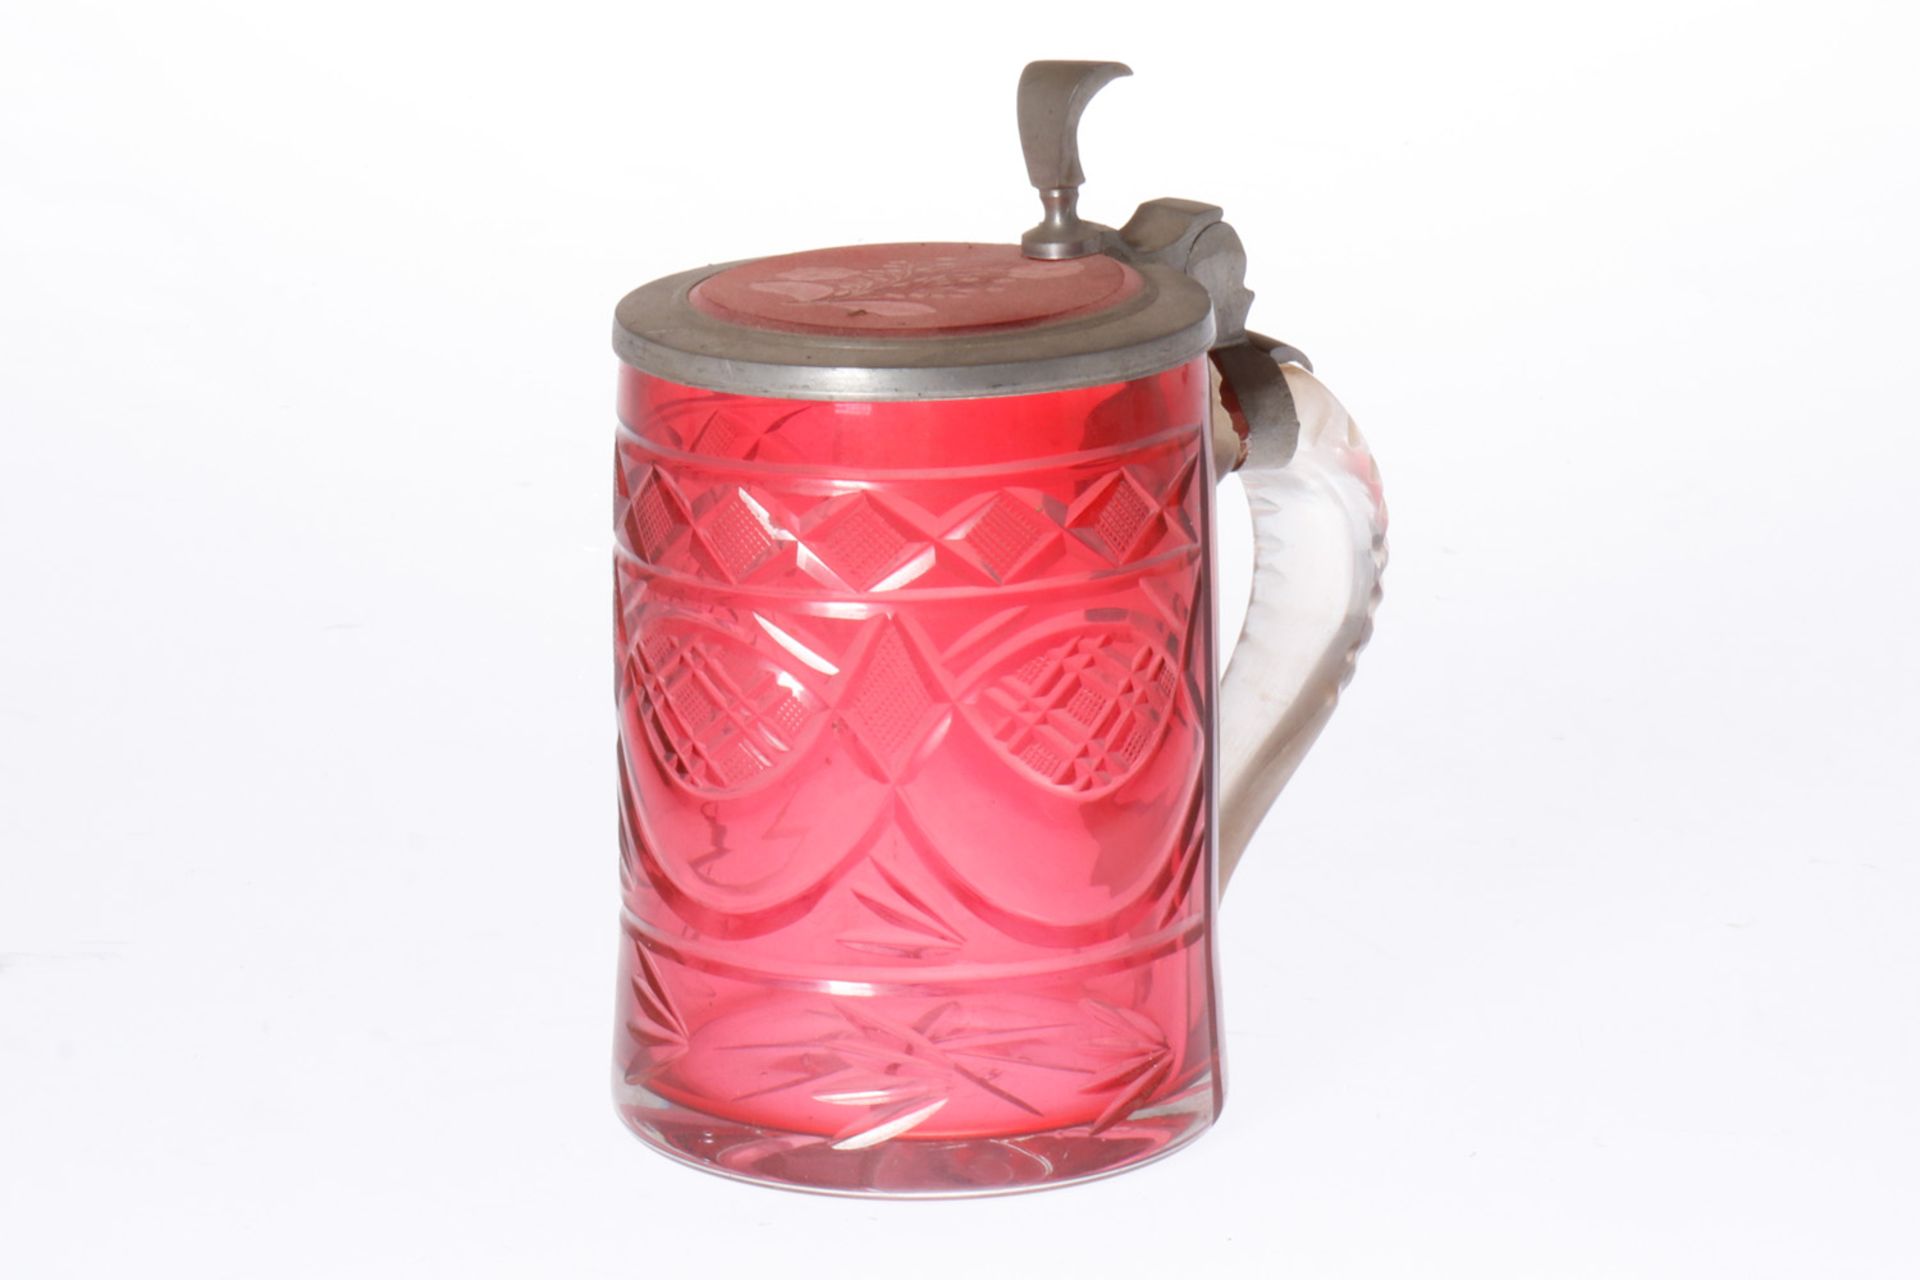 Bierkrug, ca. Mitte 19. Jh., rotes Glas, Zinndeckel mit Blumenmotiv im Glas und graviertem